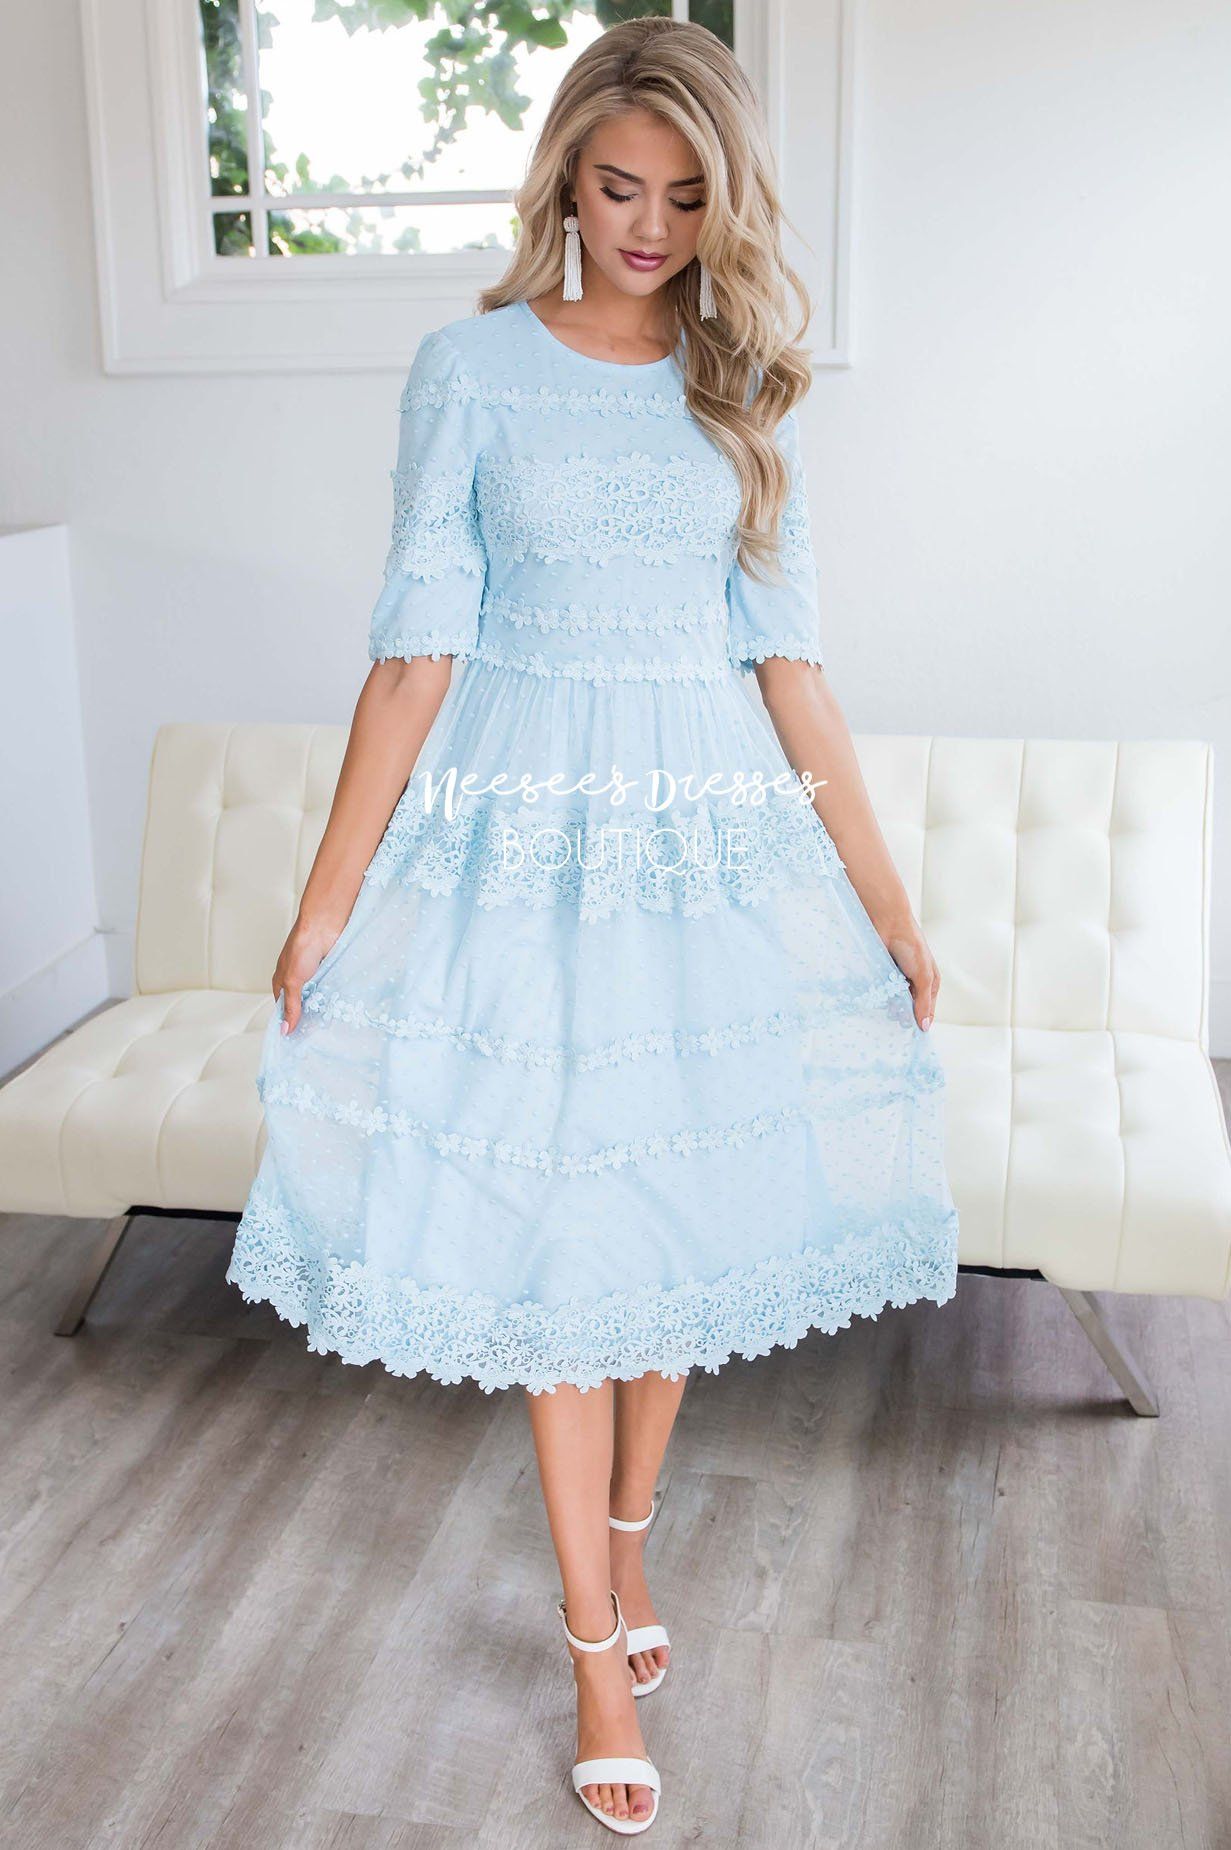 modest light blue dress